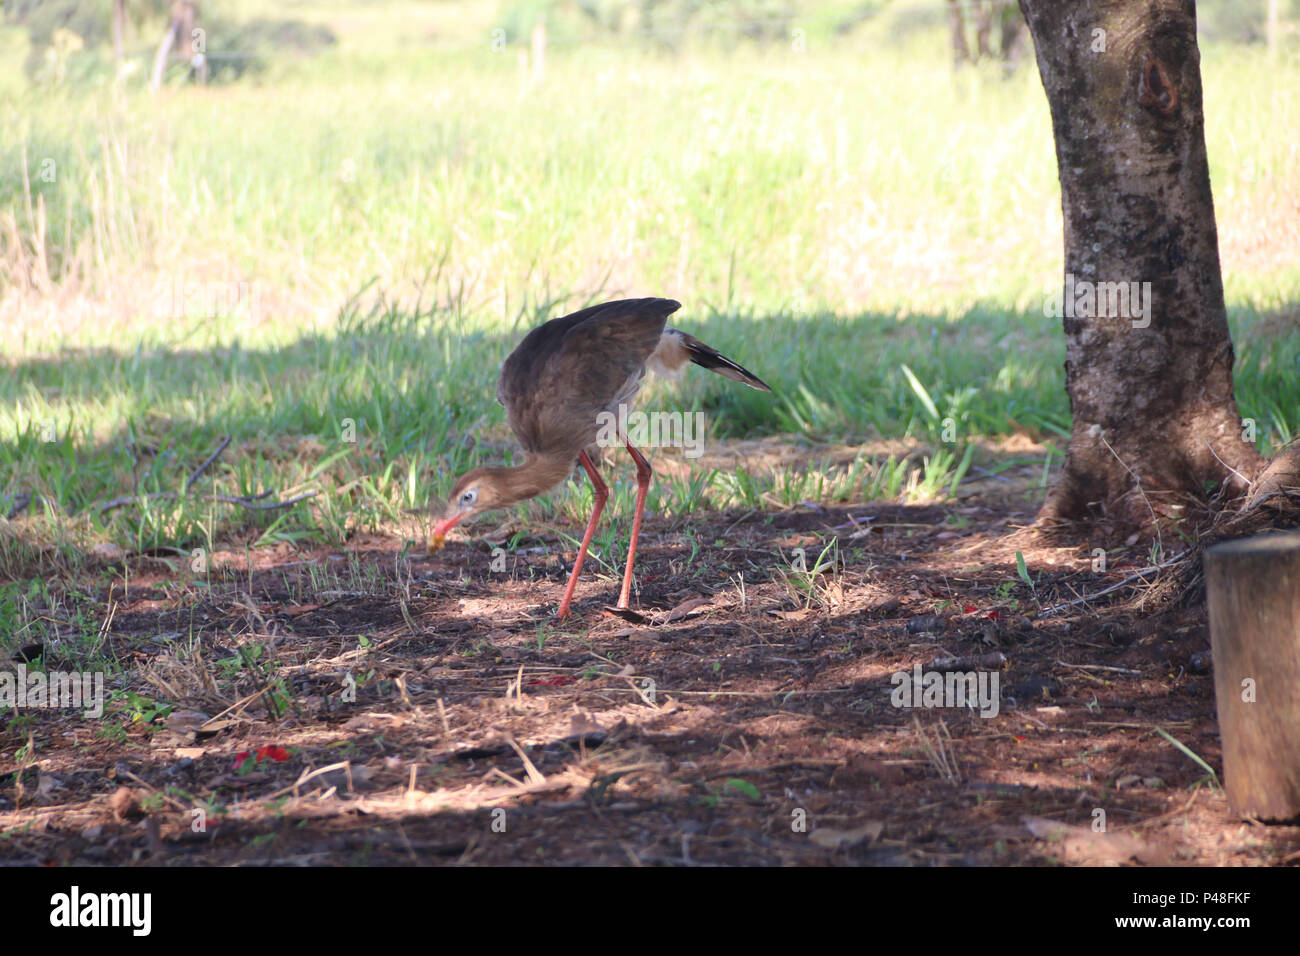 NOVA ANDRADINA, MS - 24.03.2015: SERIEMAS - Aves seriemas (cariama cristata) são vistas em fazenda na cidade de Nova Andradia, MS. (Foto: André Chaco / Fotoarena) Stock Photo